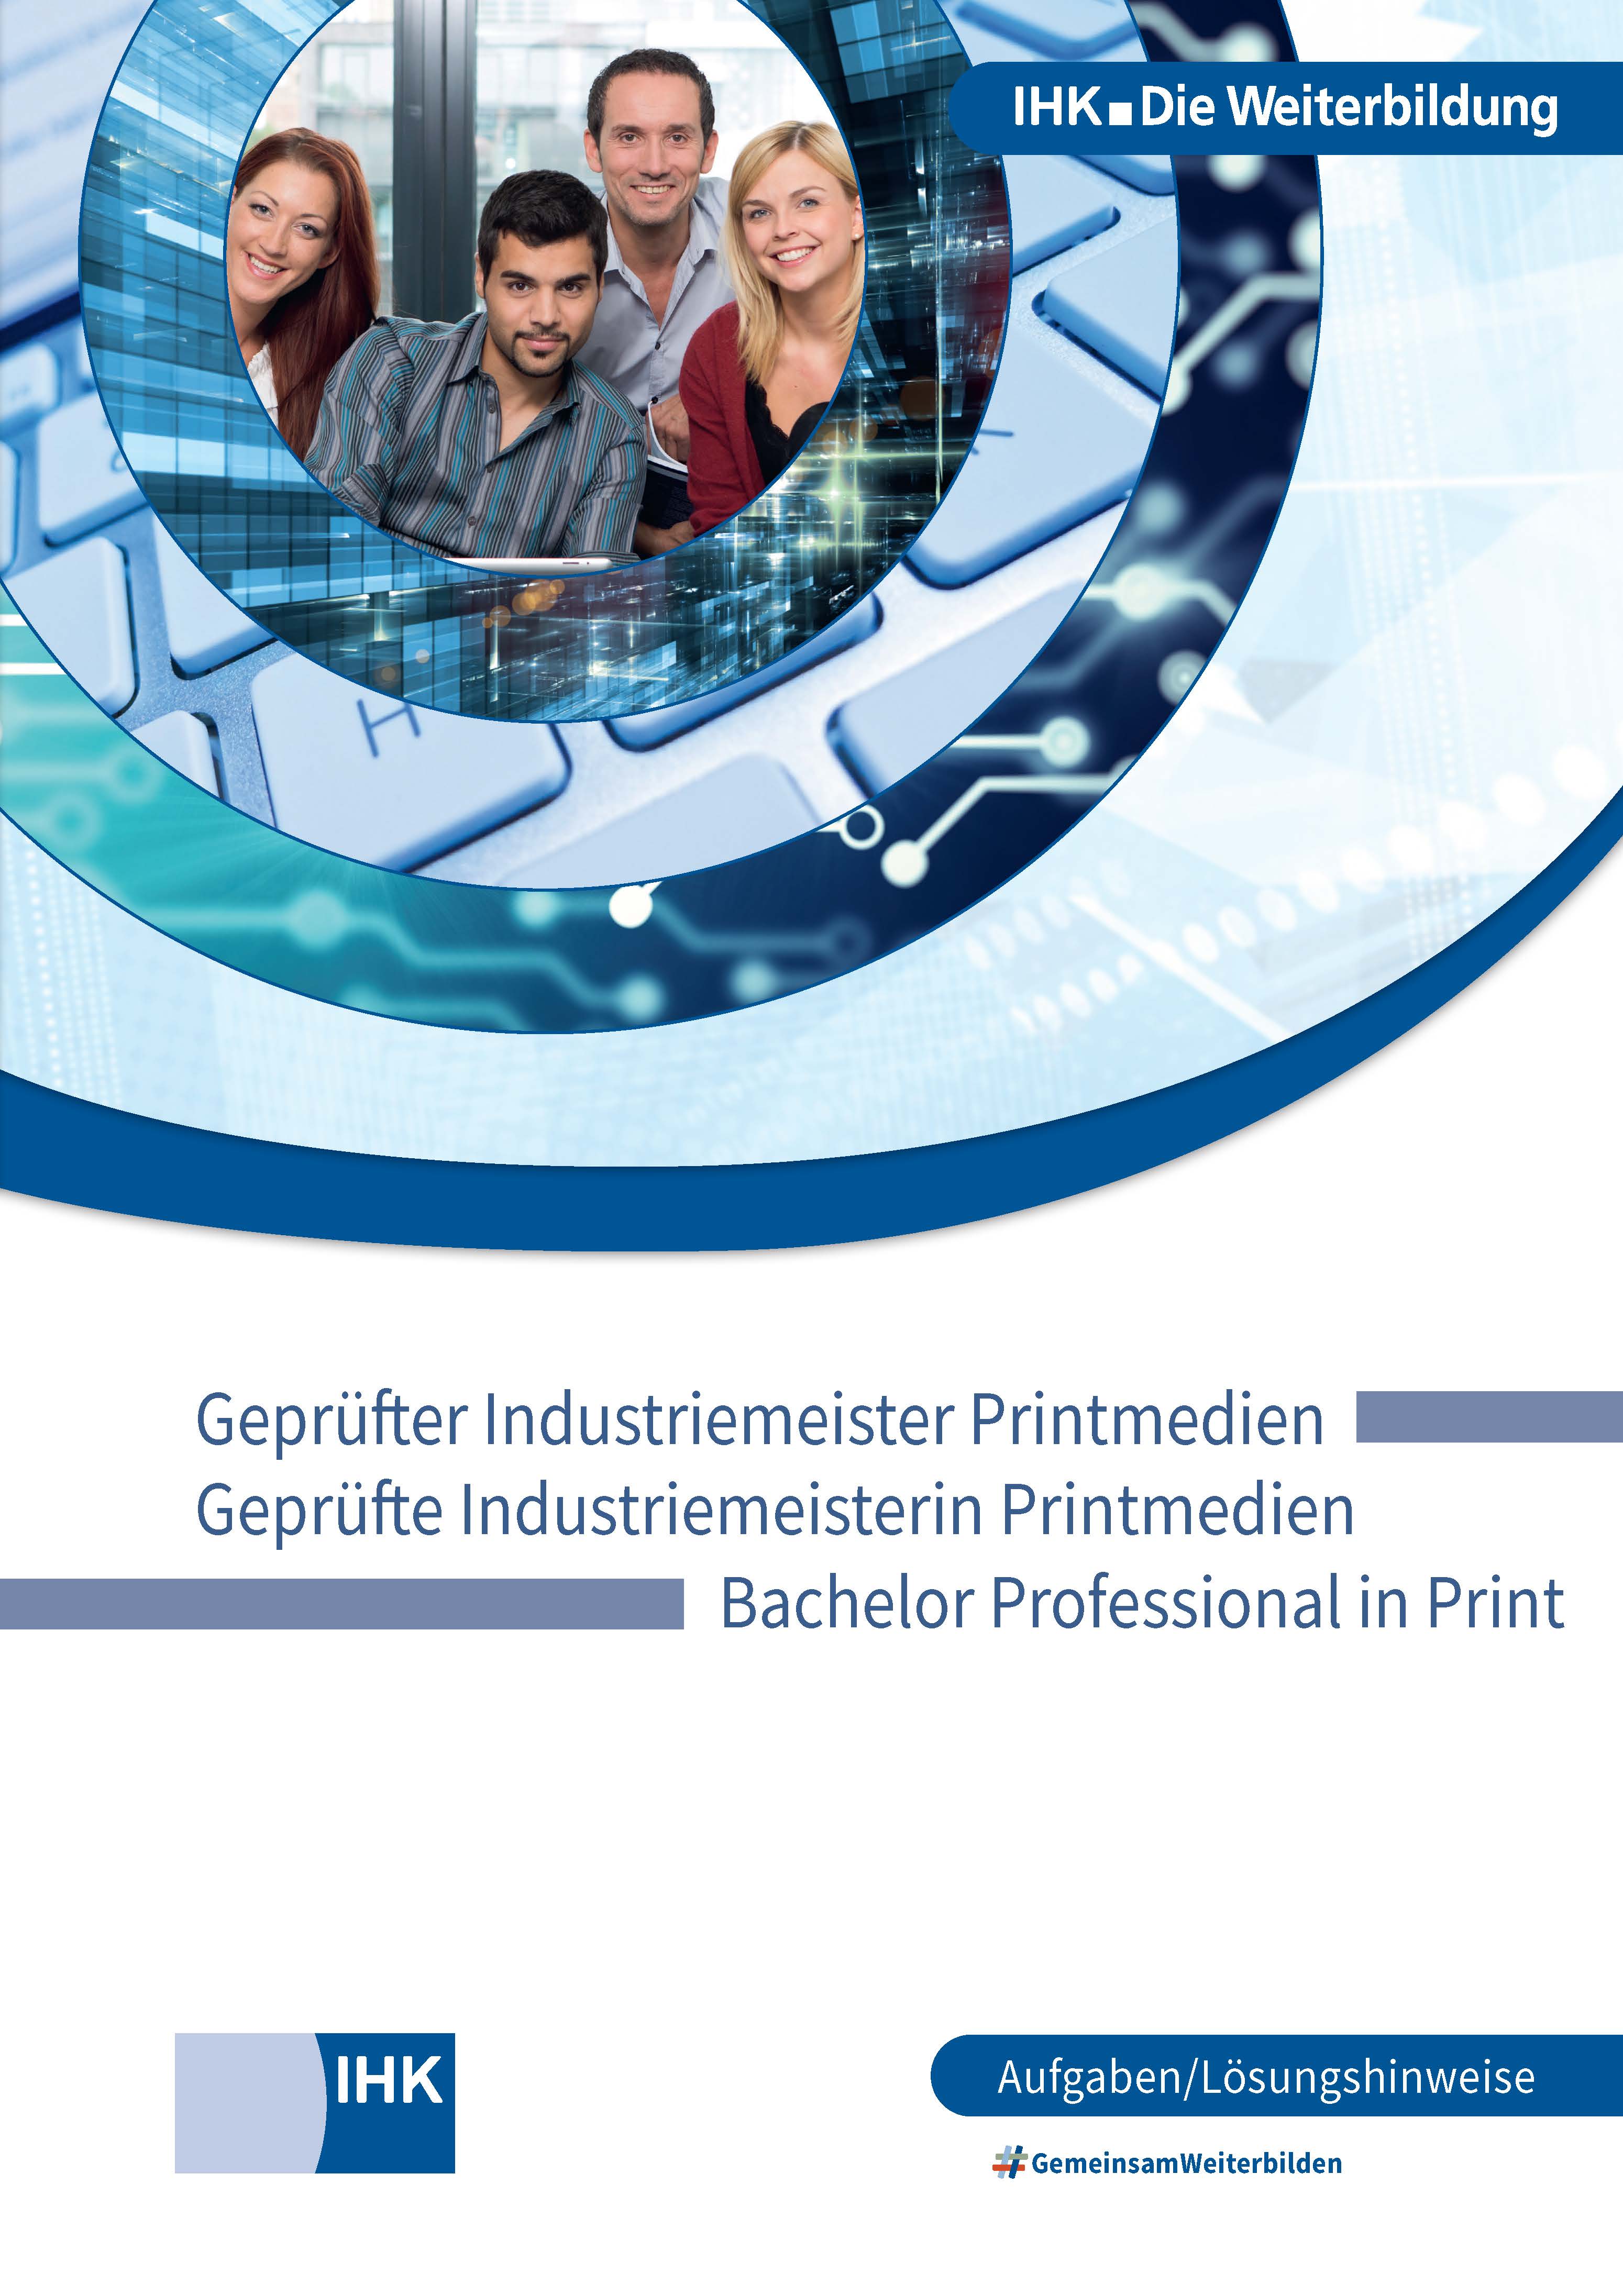 Geprüfte Industriemeister Printmedien – Bachelor Professional in Print